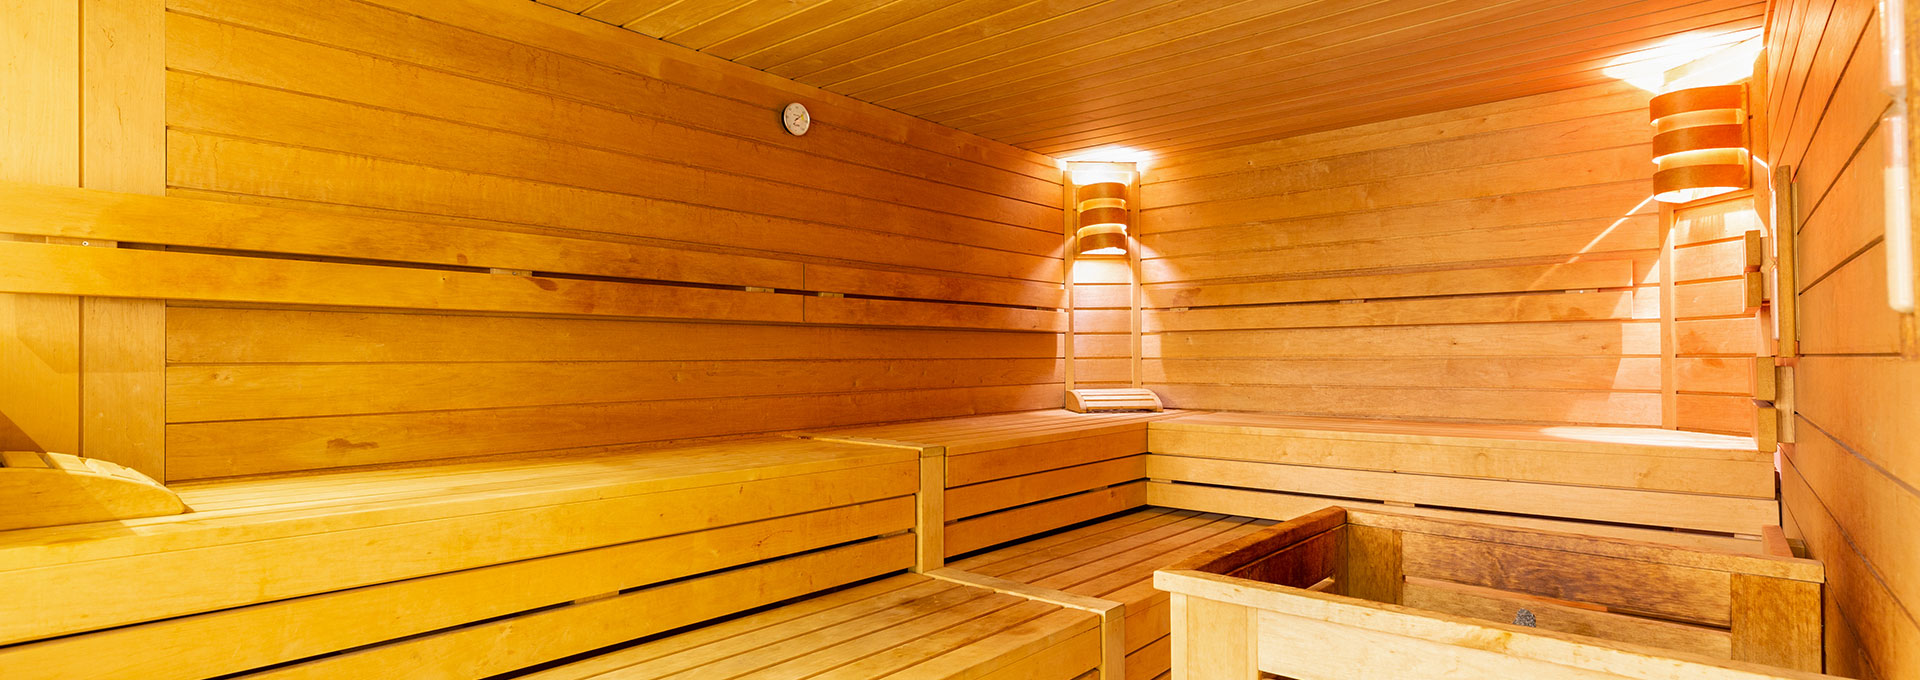 Willkommen in unserer Sauna